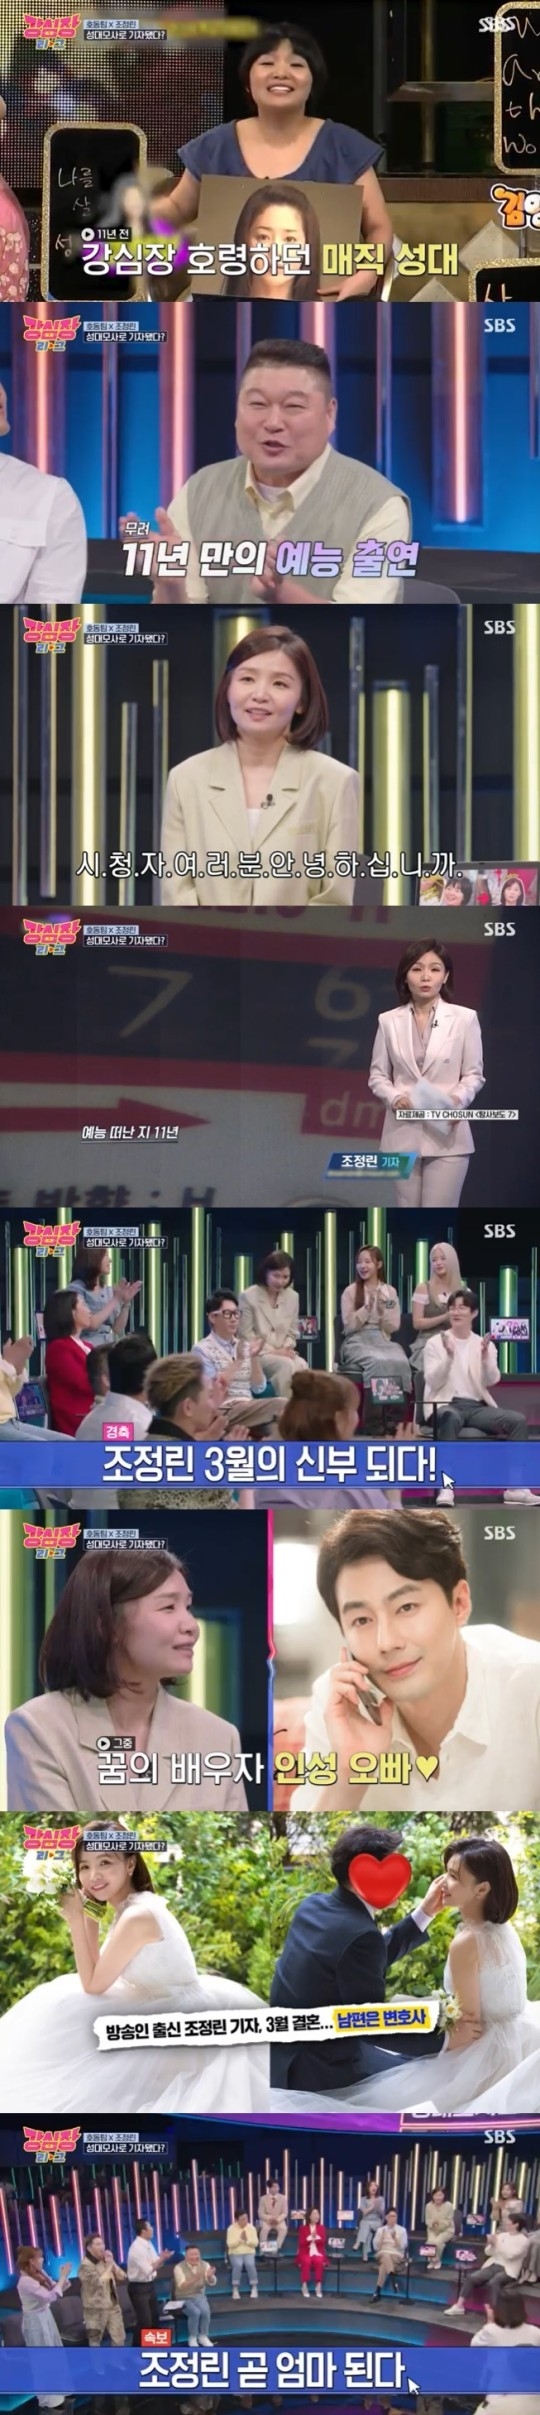 SBS 새 예능 프로그램 ‘강심장 리그’ 제공